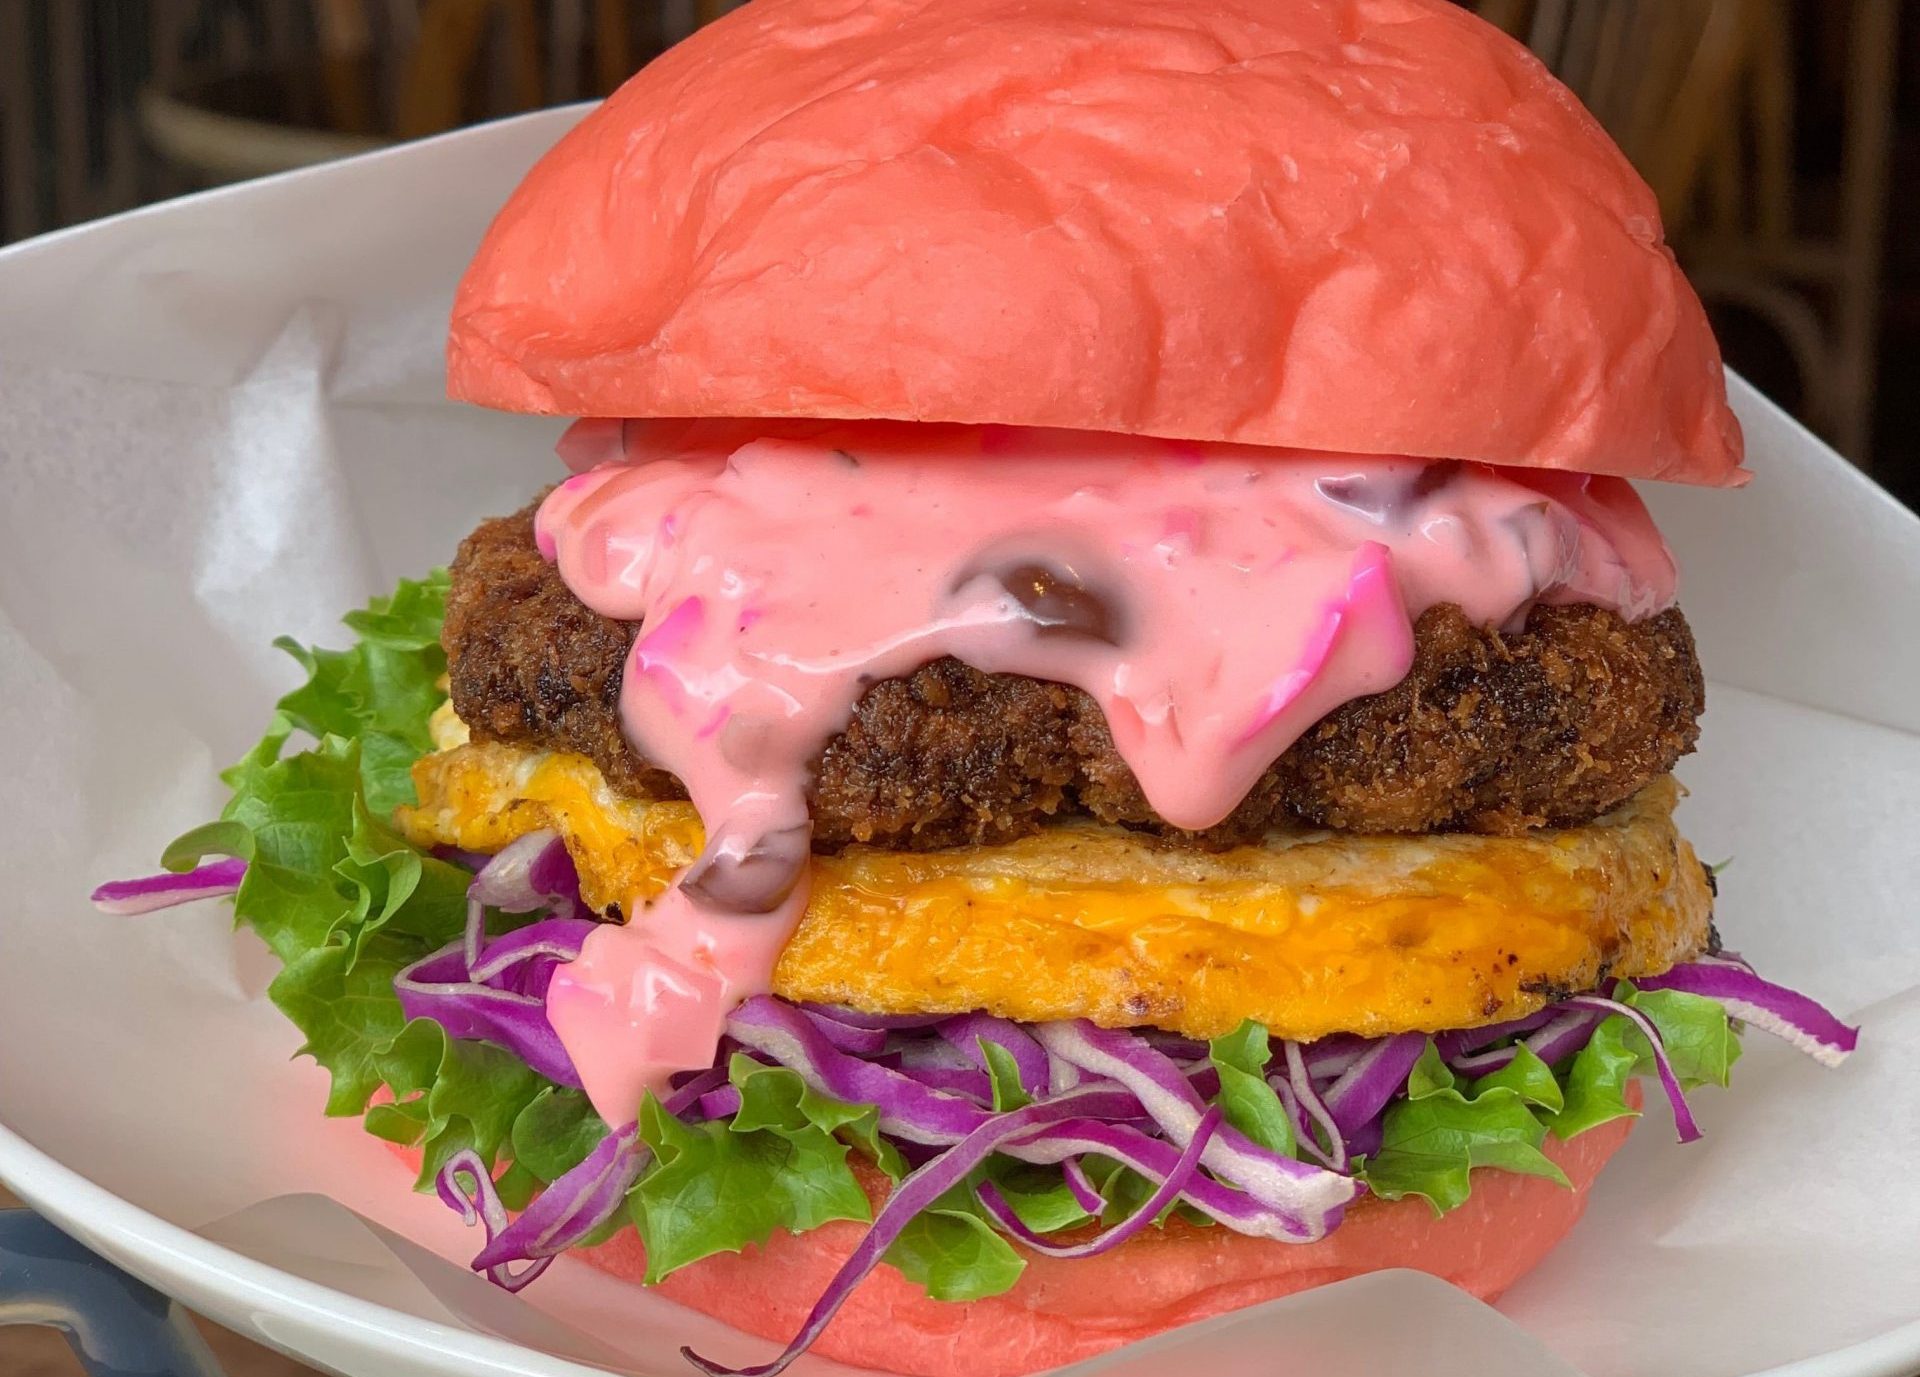 Menyingkap Kuliner Tersembunyi di Kyoto: Burger Sakura Dengan Saus Warna Pink